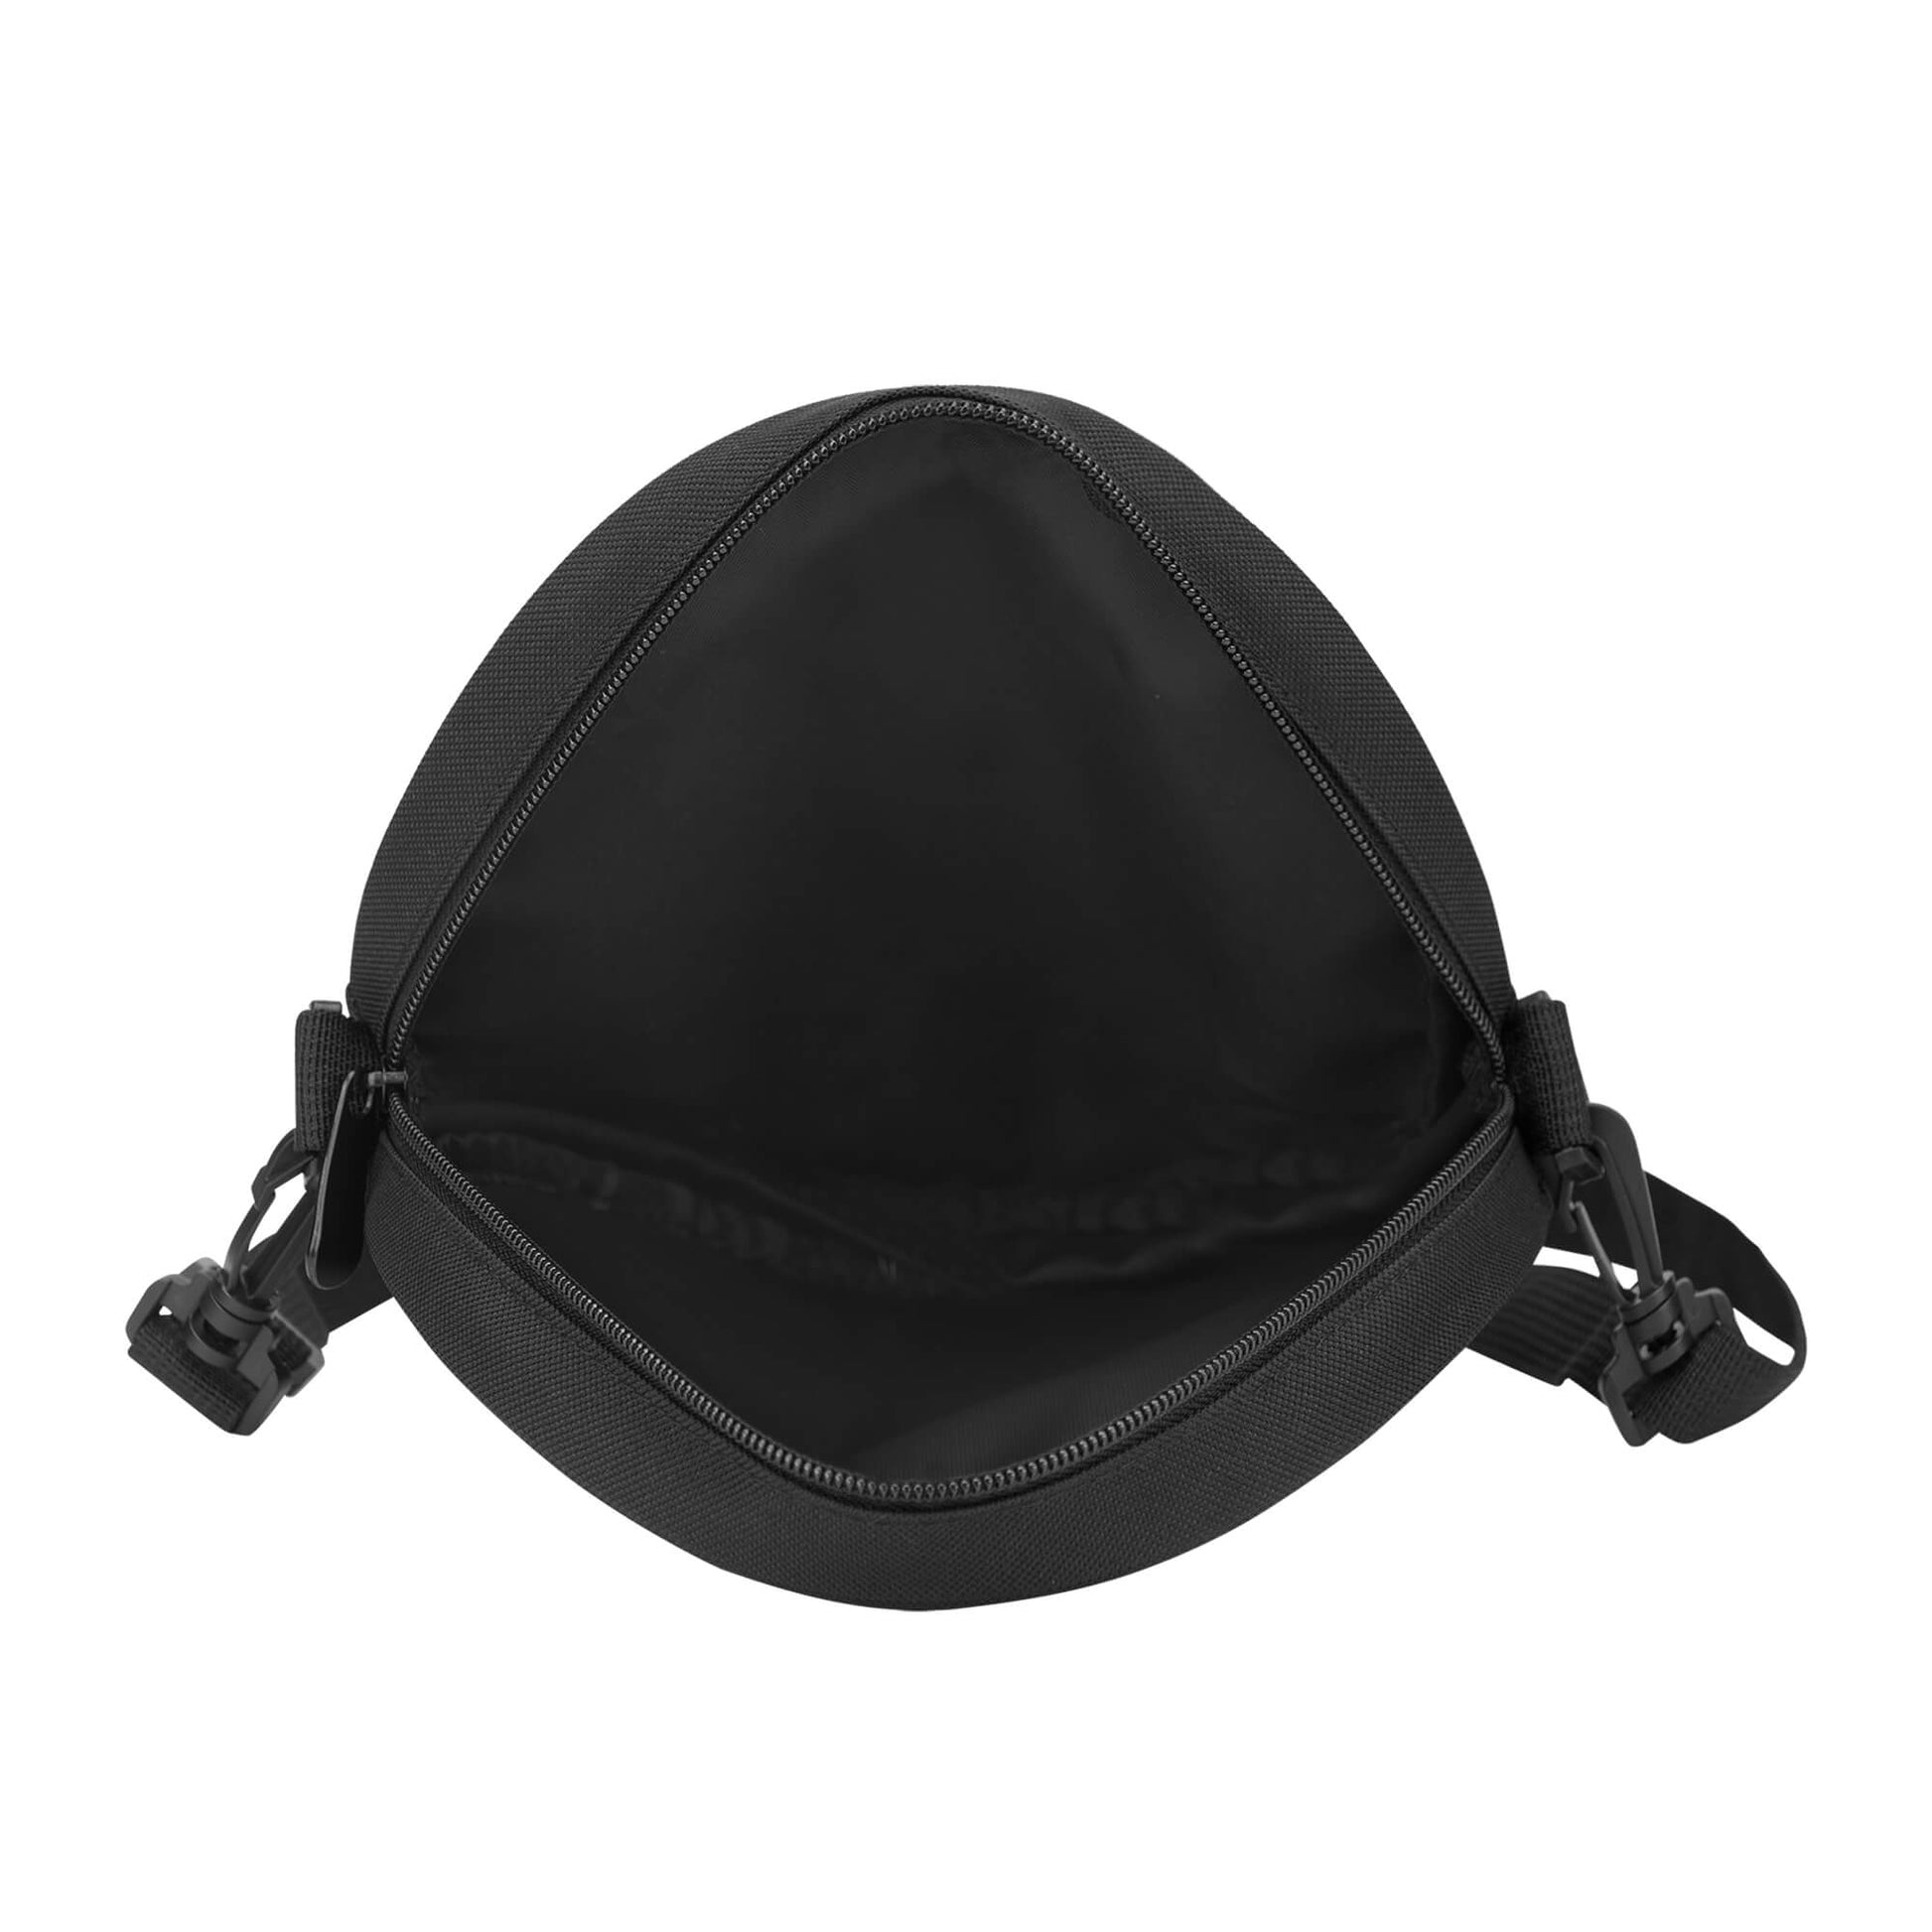 Round Satchel Bags - Premium  from Concordia Style Boutique - Just $11.98! Shop now at Concordia Style Boutique